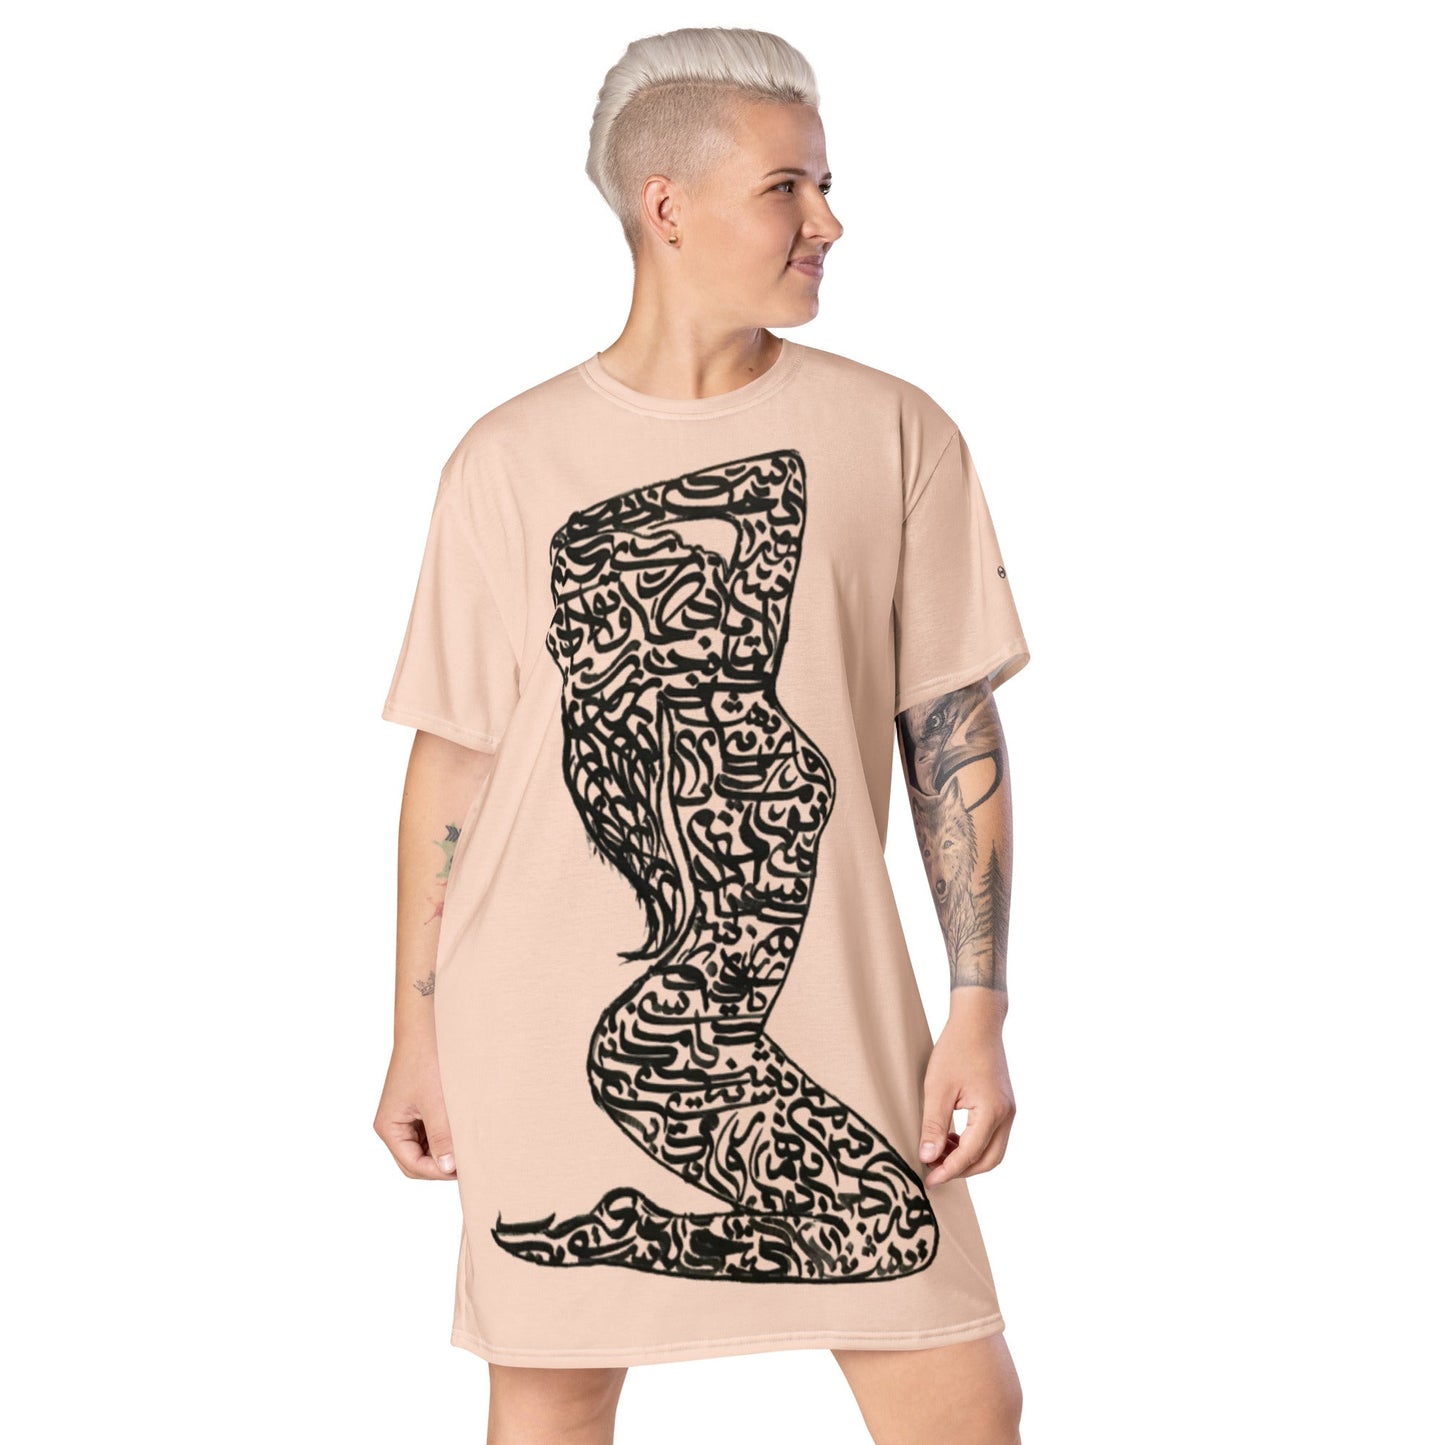 Zan | Women's T-Shirt Dress - Bonotee